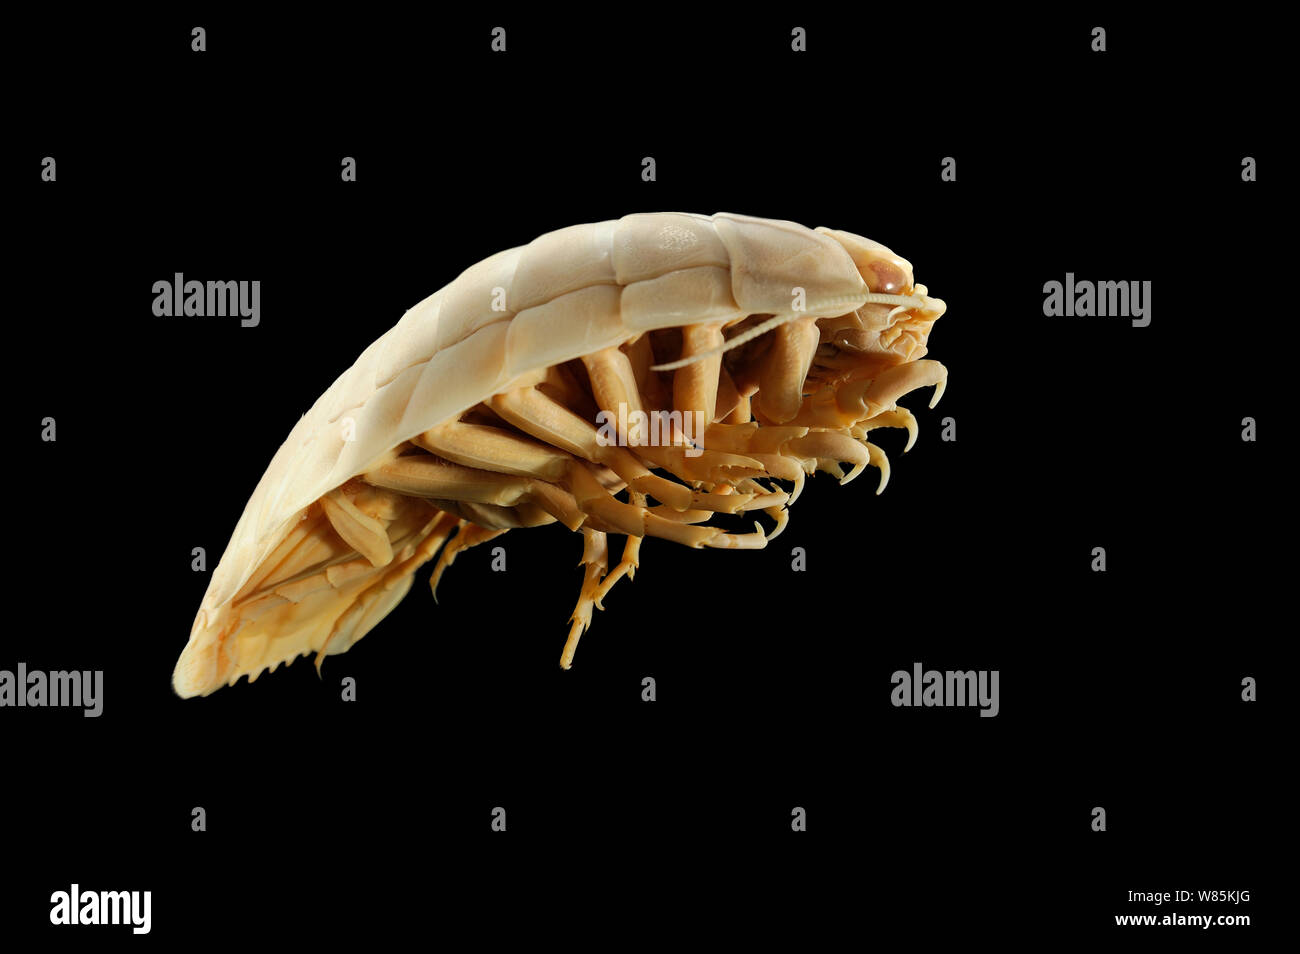 Riesige deepsea isopod (Bathynomus giganteus), juvenile Muster, aus dem Golf von Aden, Arabisches Meer, Indischer Ozean in einer Tiefe von 1318 m. Stockfoto